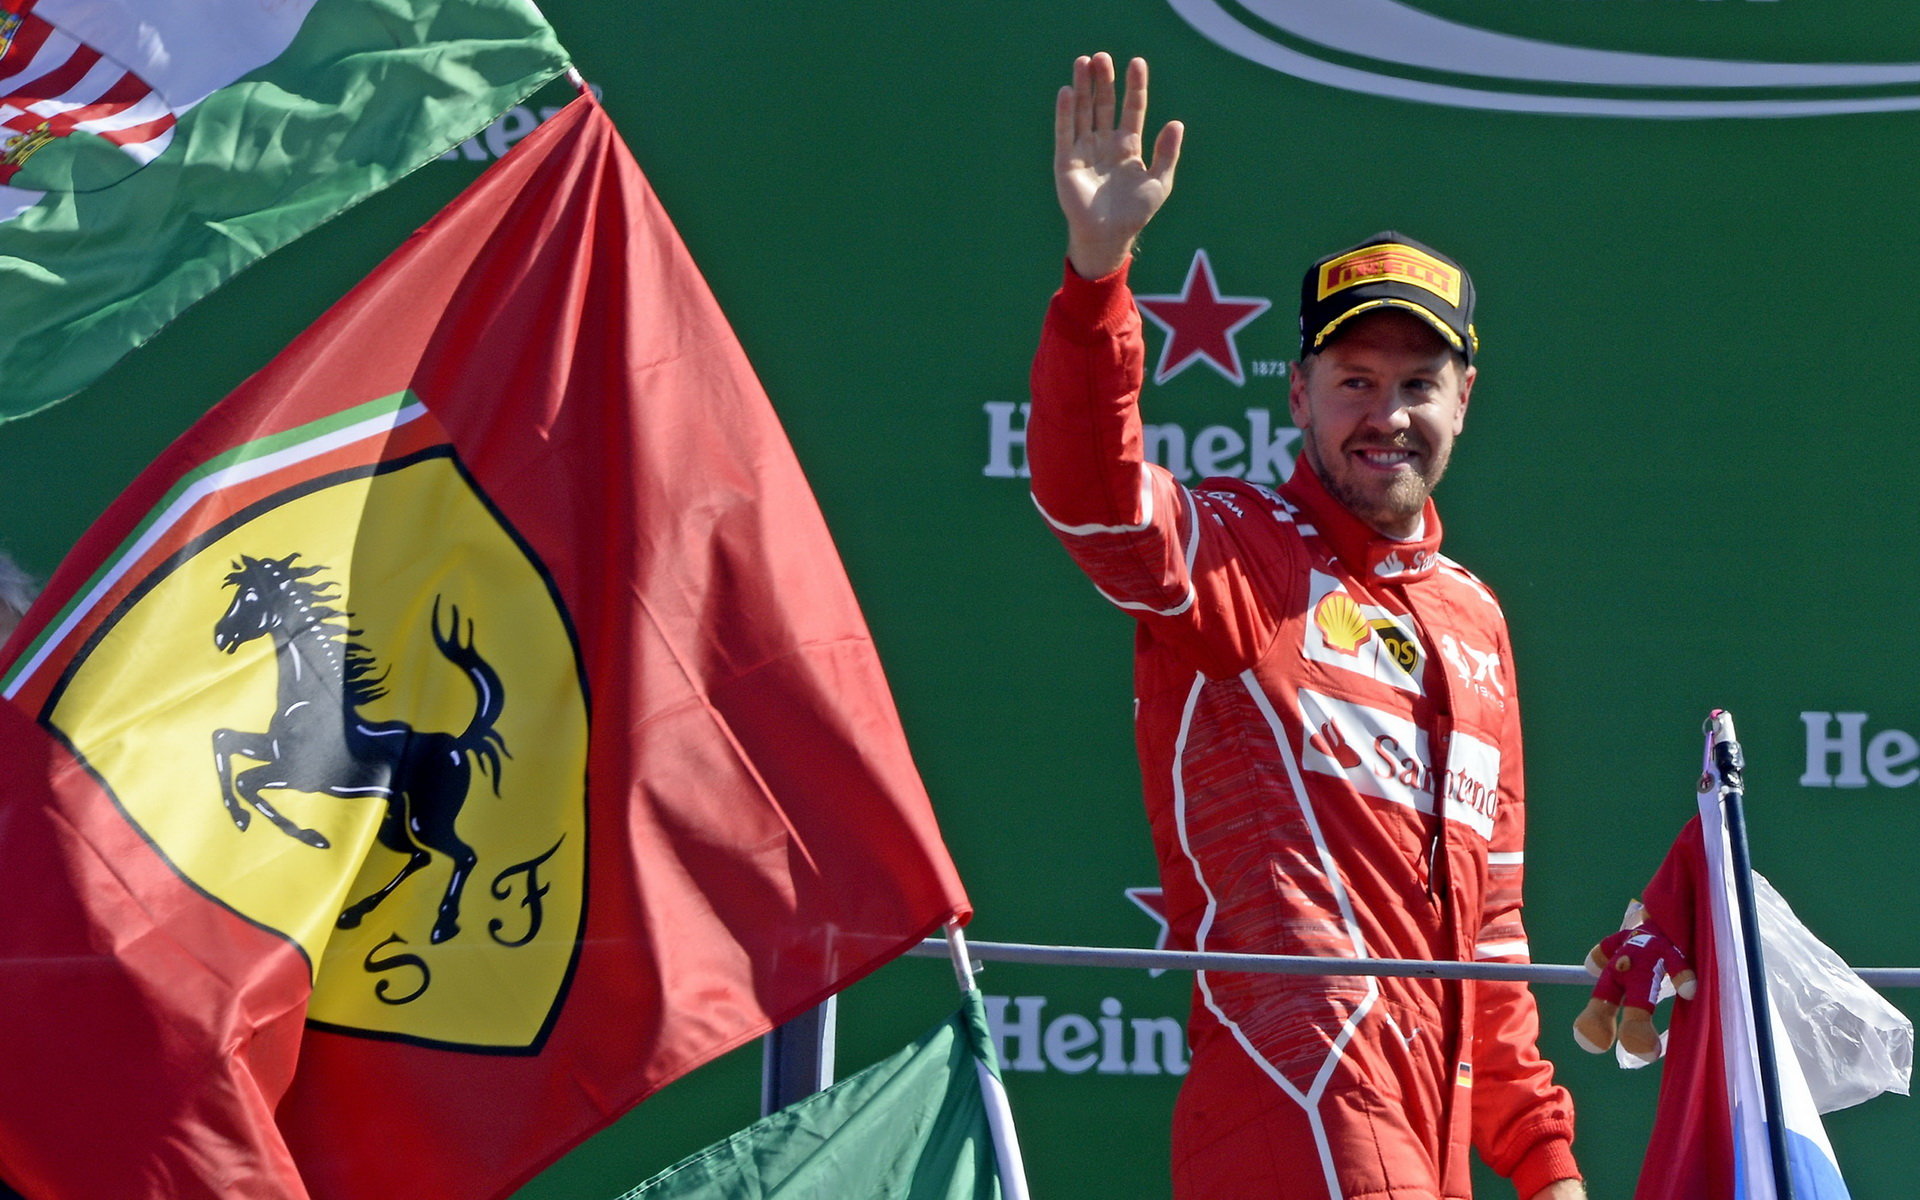 Sebastian Vettel na pódu po závodě v Itálii